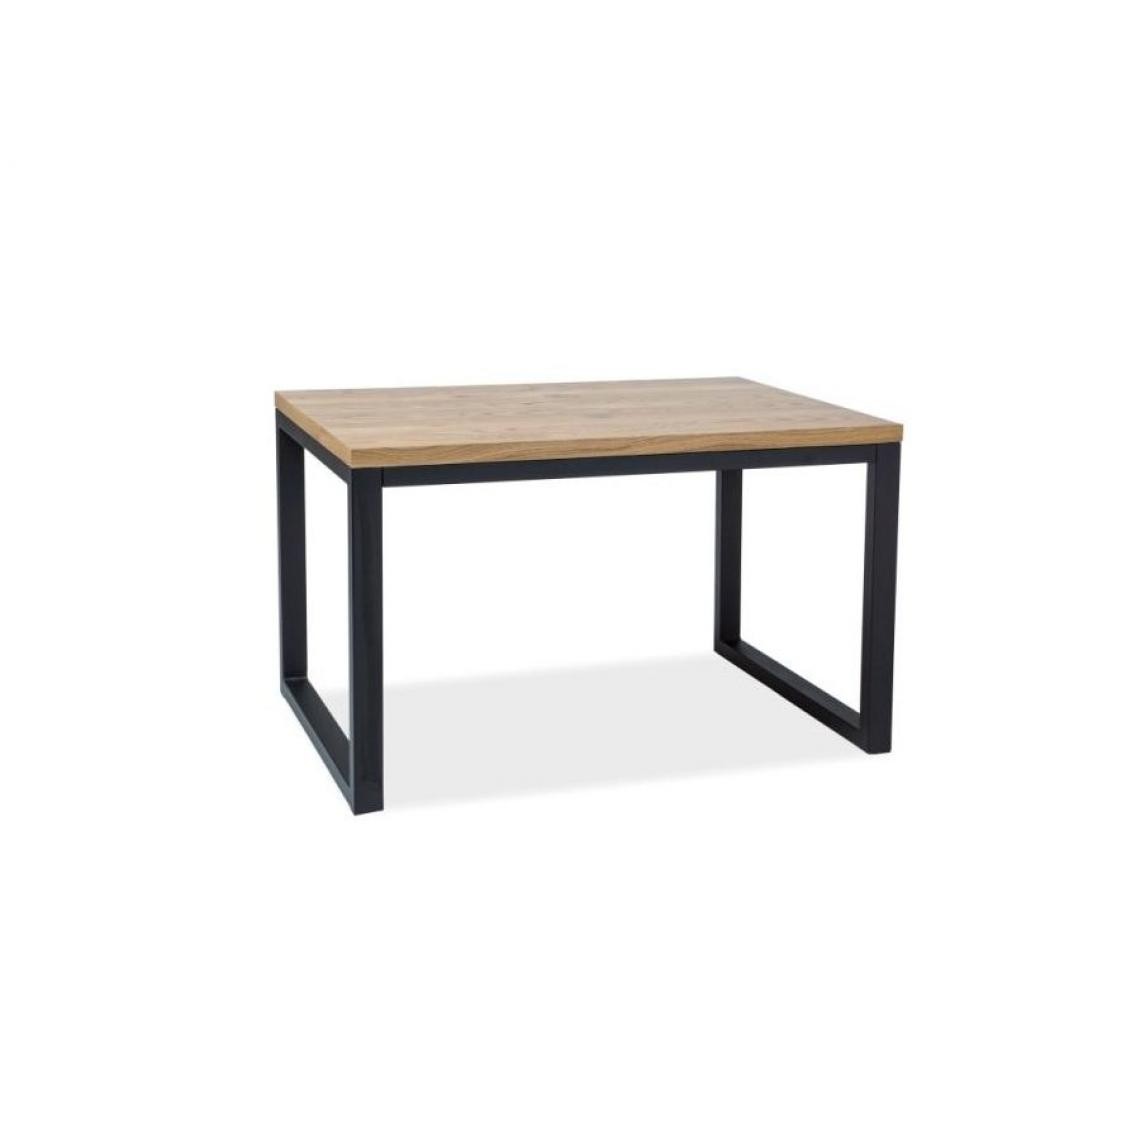 Hucoco - LORAI - Table moderne de style scandinave - 150X90x78 cm - Plateau en bois en placage naturel - Piètement en métal - Chêne - Tables à manger